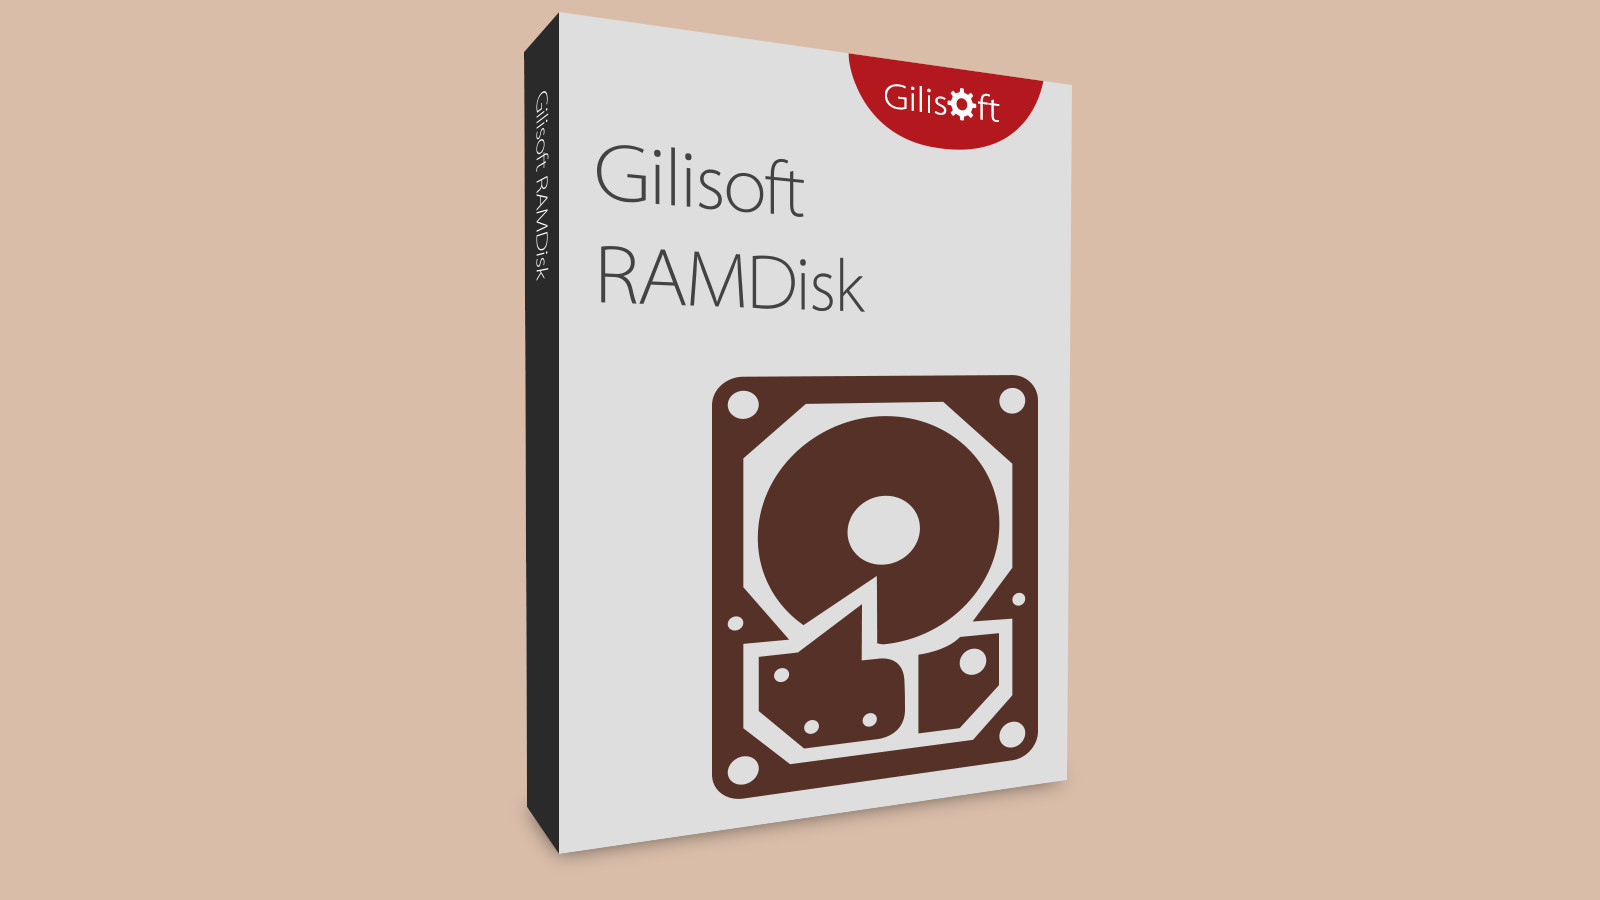 Gilisoft RAMDisk CD Key [USD 15.54]